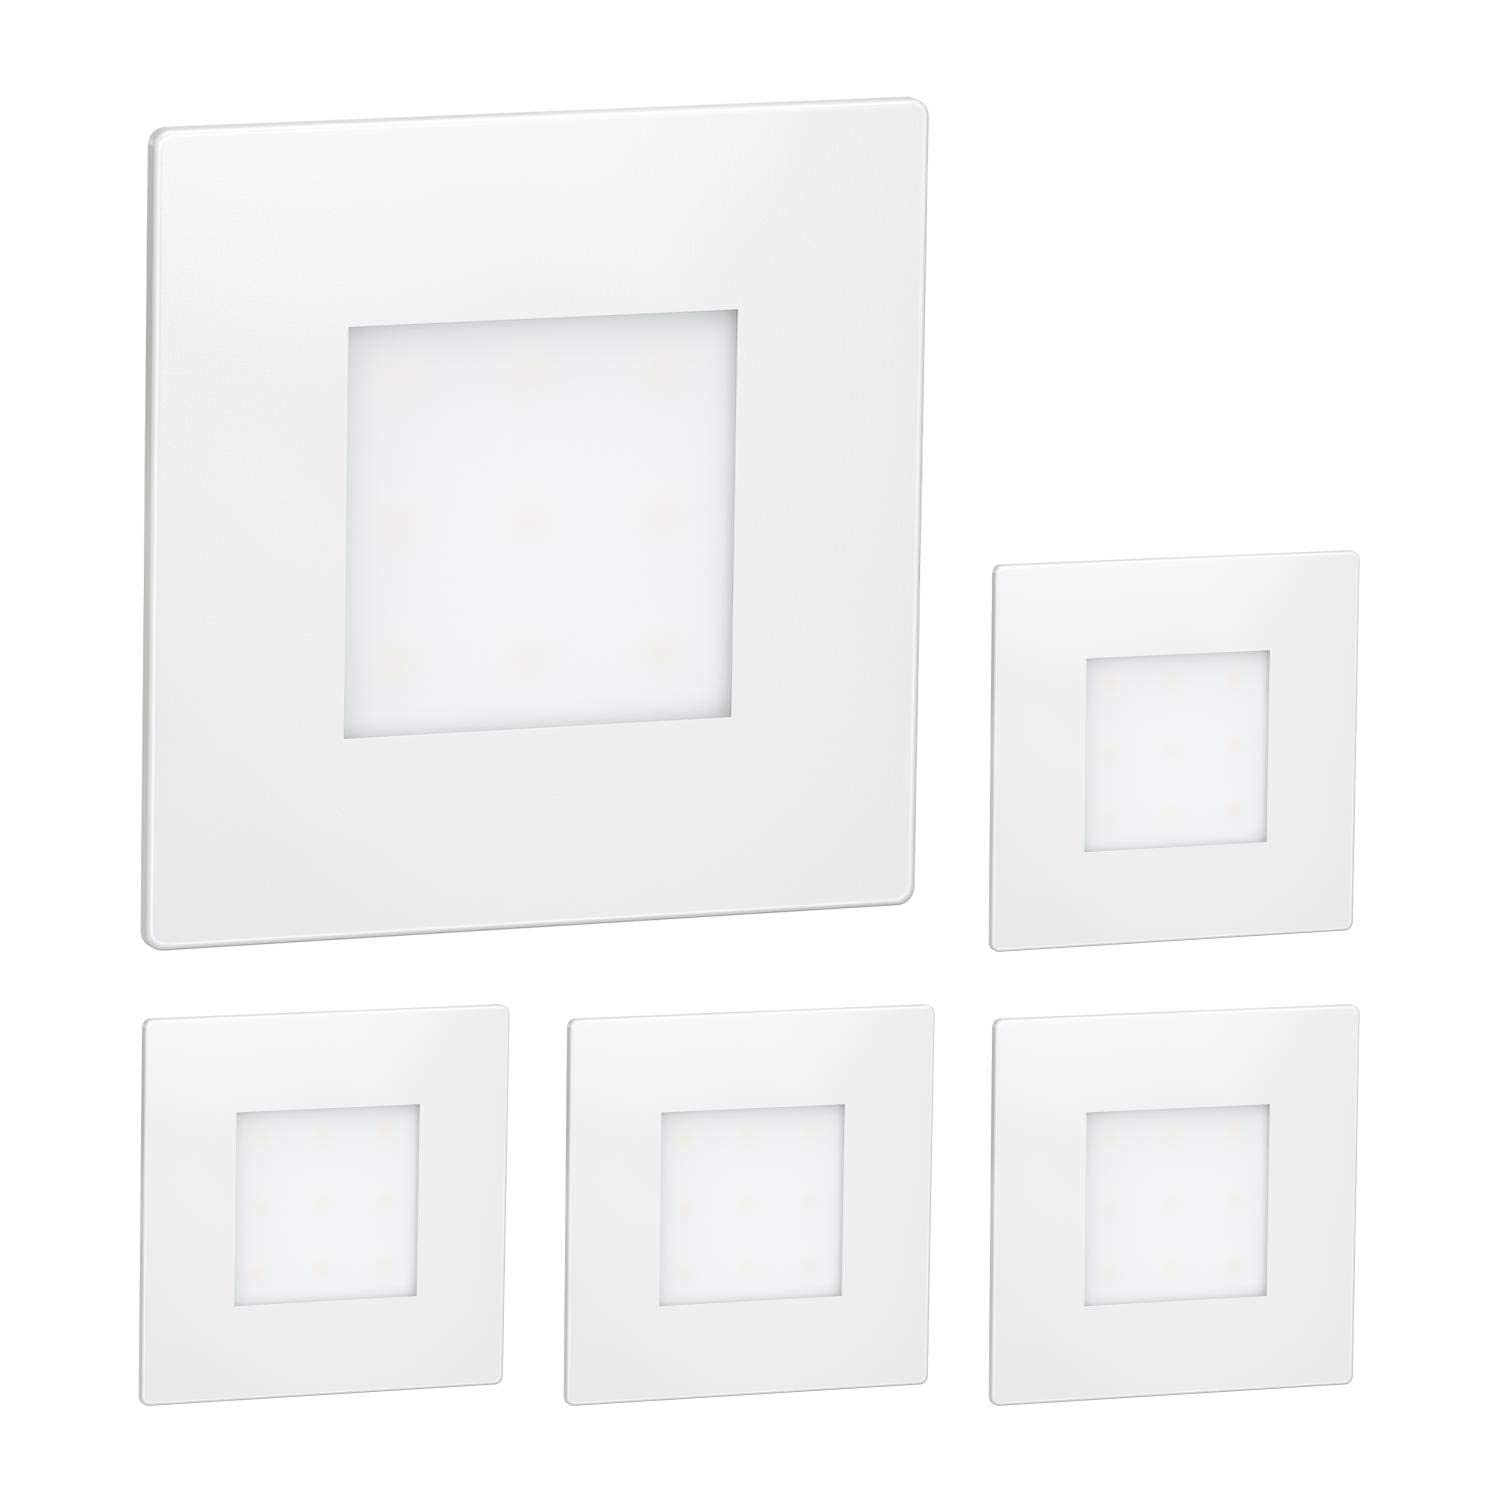 ledscom.de 5 Stück LED Treppenlicht/Wandeinbauleuchte FEX für innen und außen, eckig, 85 x 85mm, kaltweiß